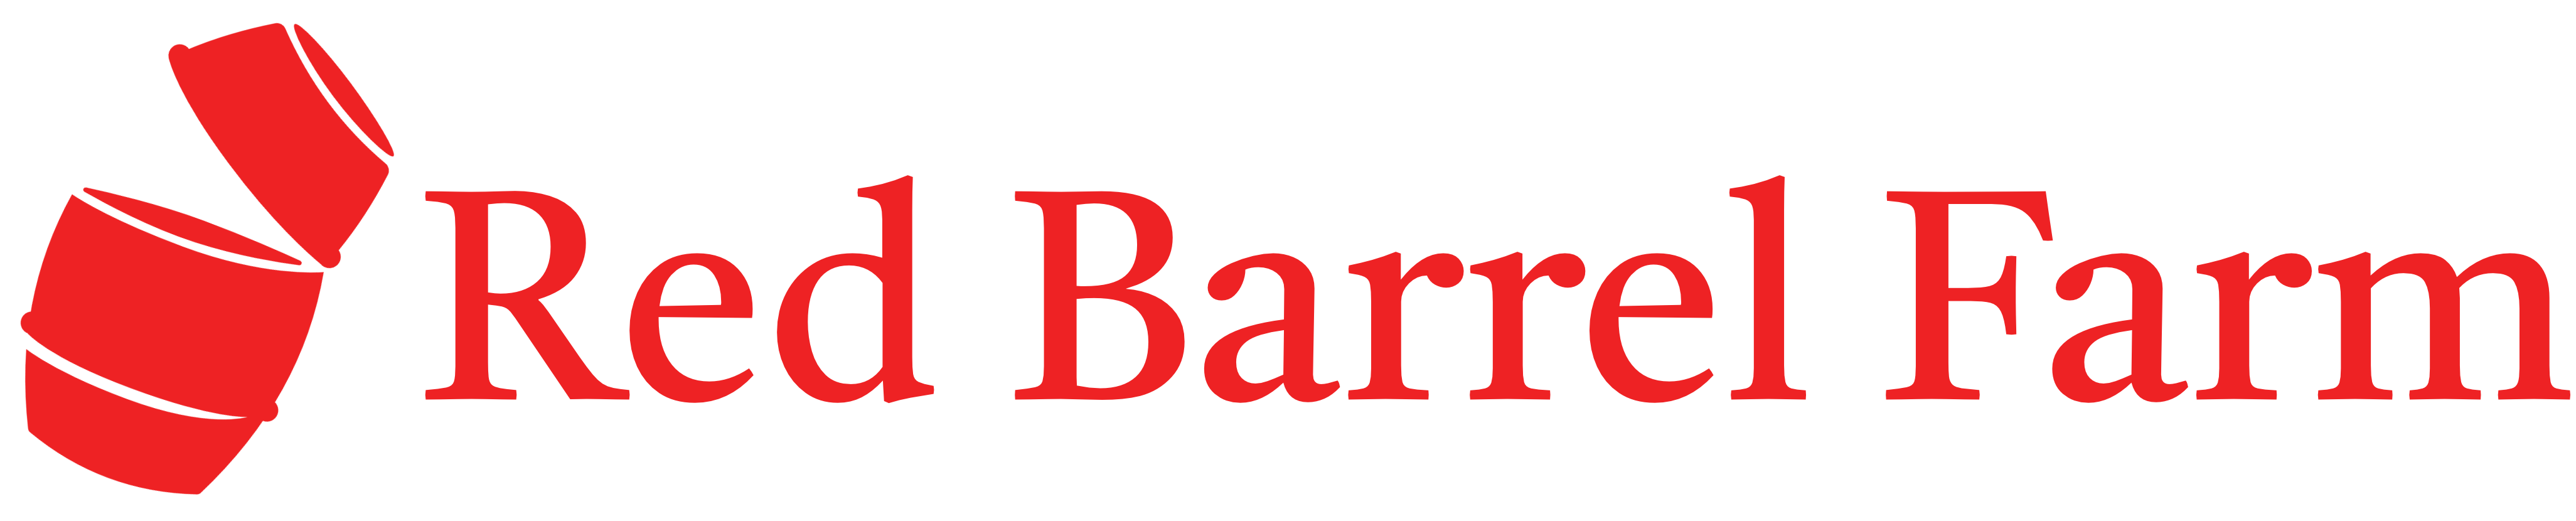 Red Barrel Farm Logo